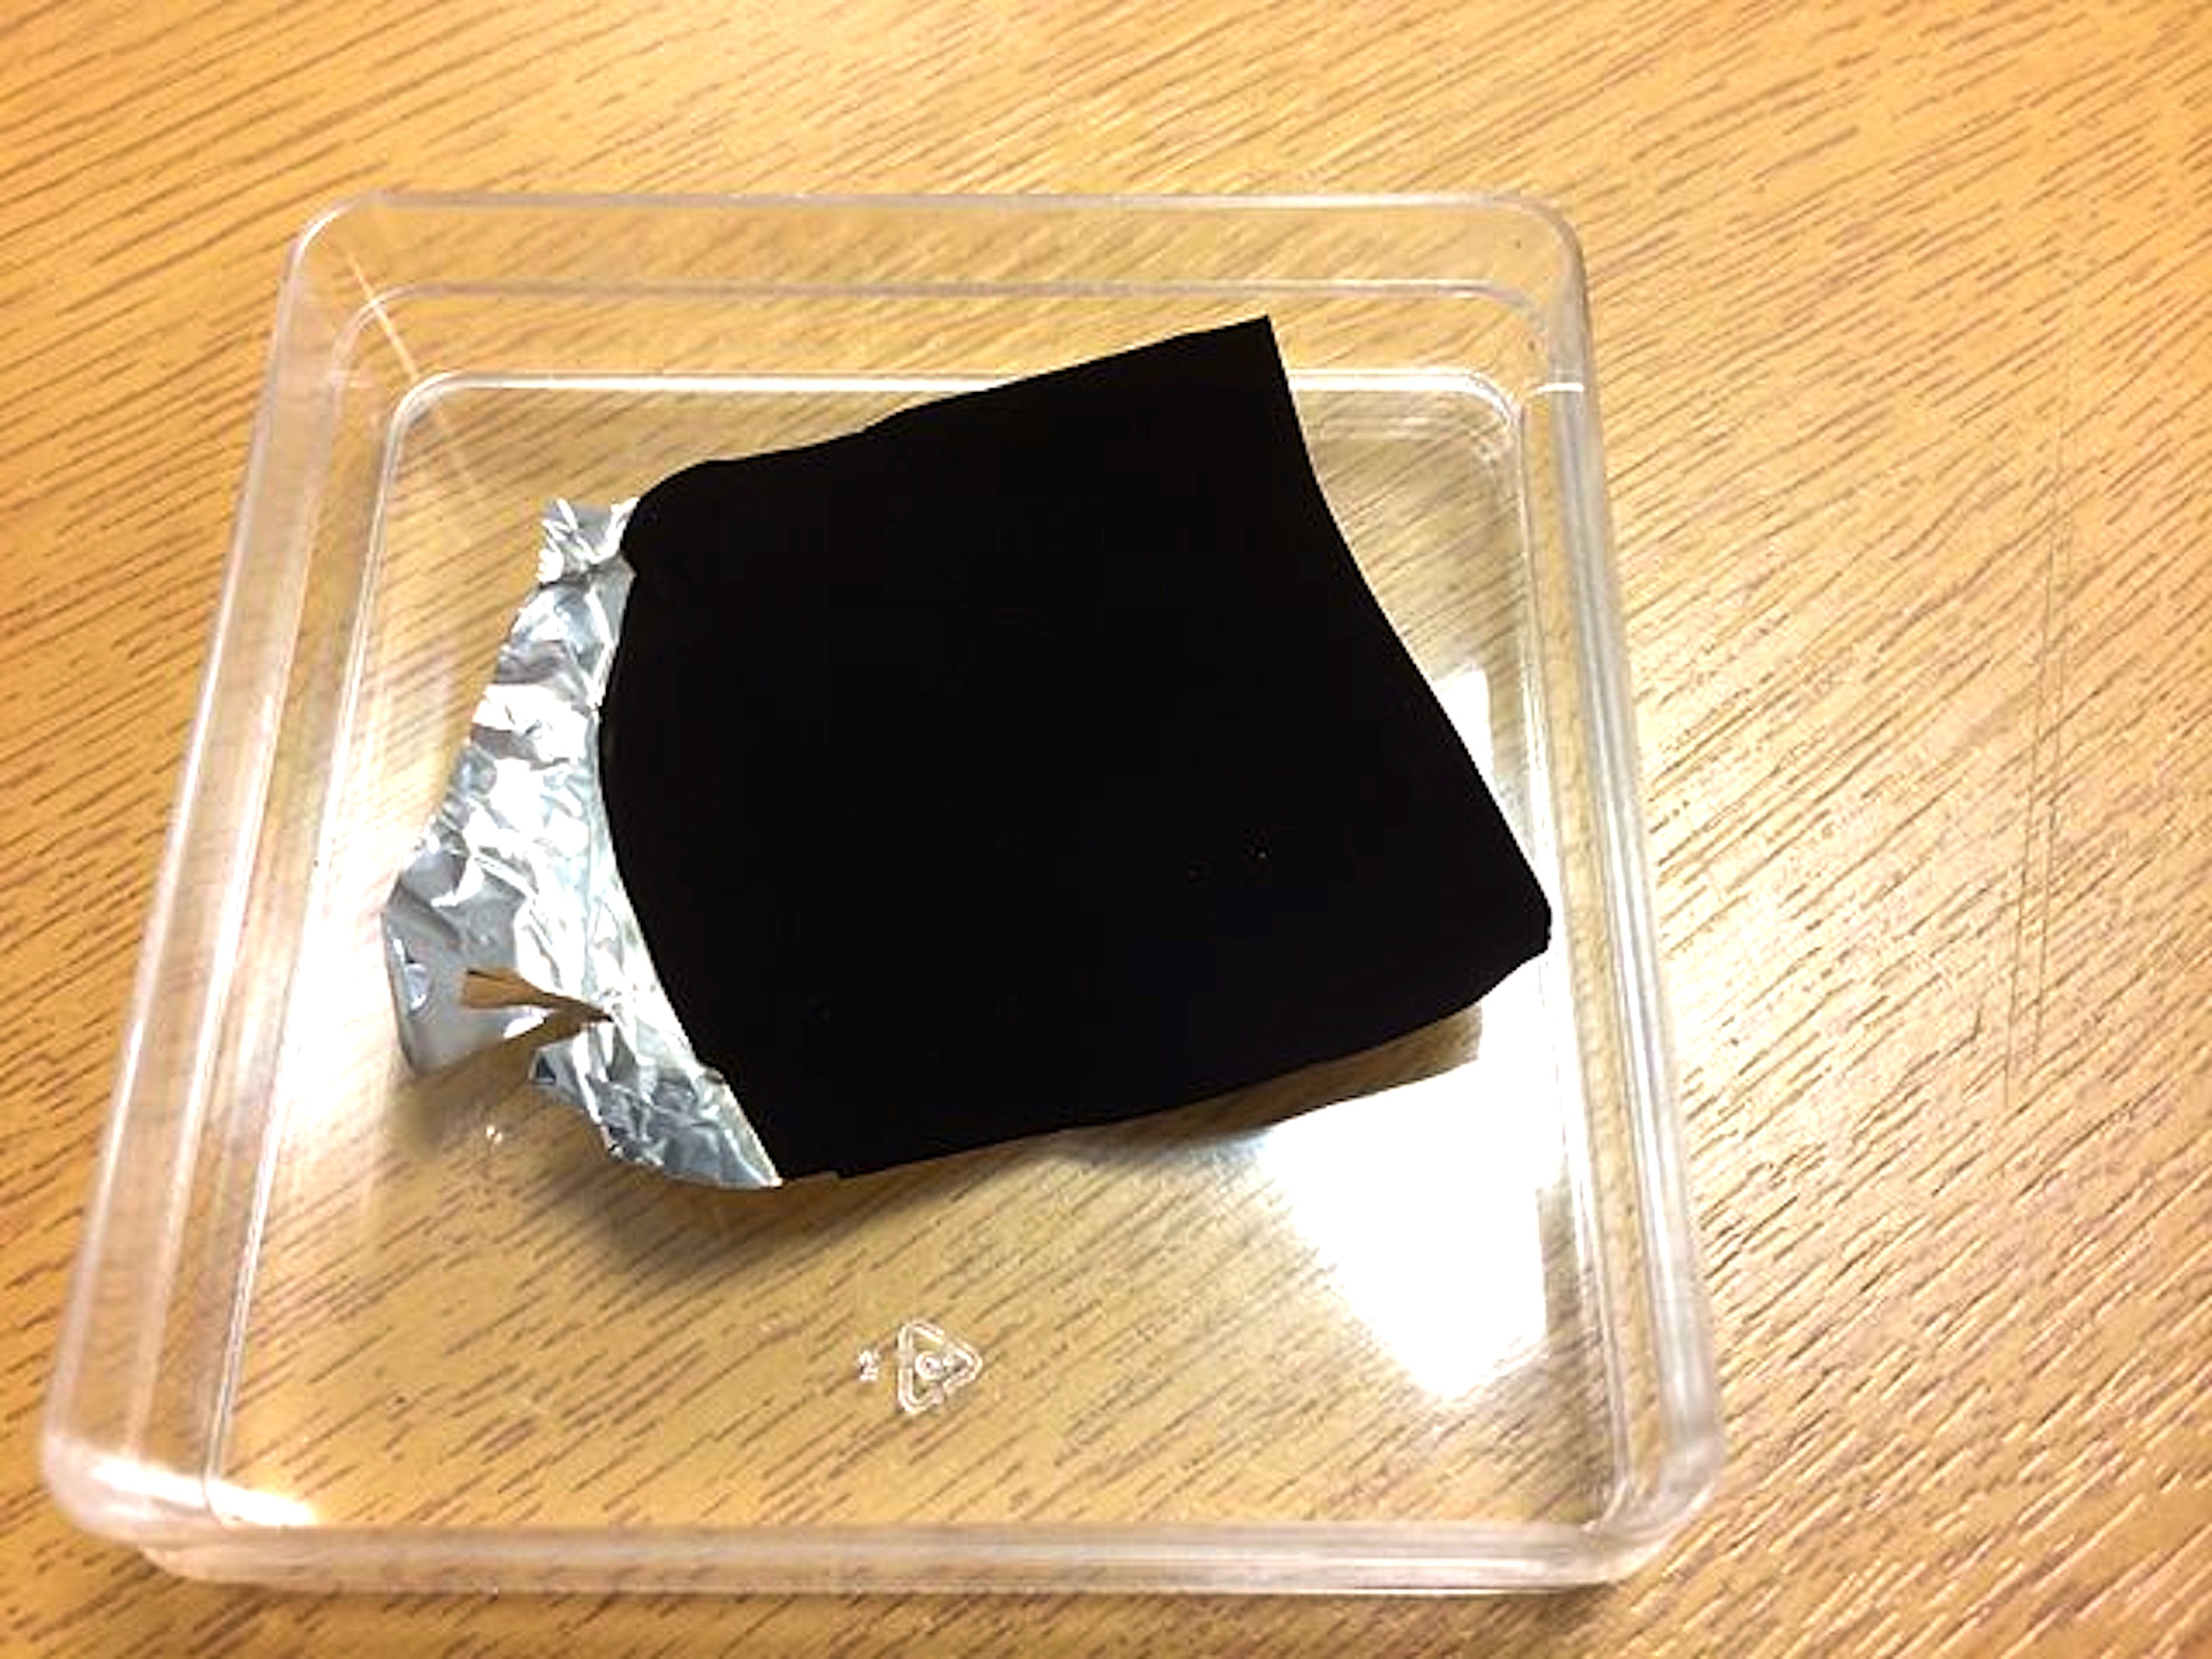 Поставь самый темный. Vantablack 2. Черный цвет поглощающий 99 света. Материал вантаблэк. Вантаблэк Vantablack.